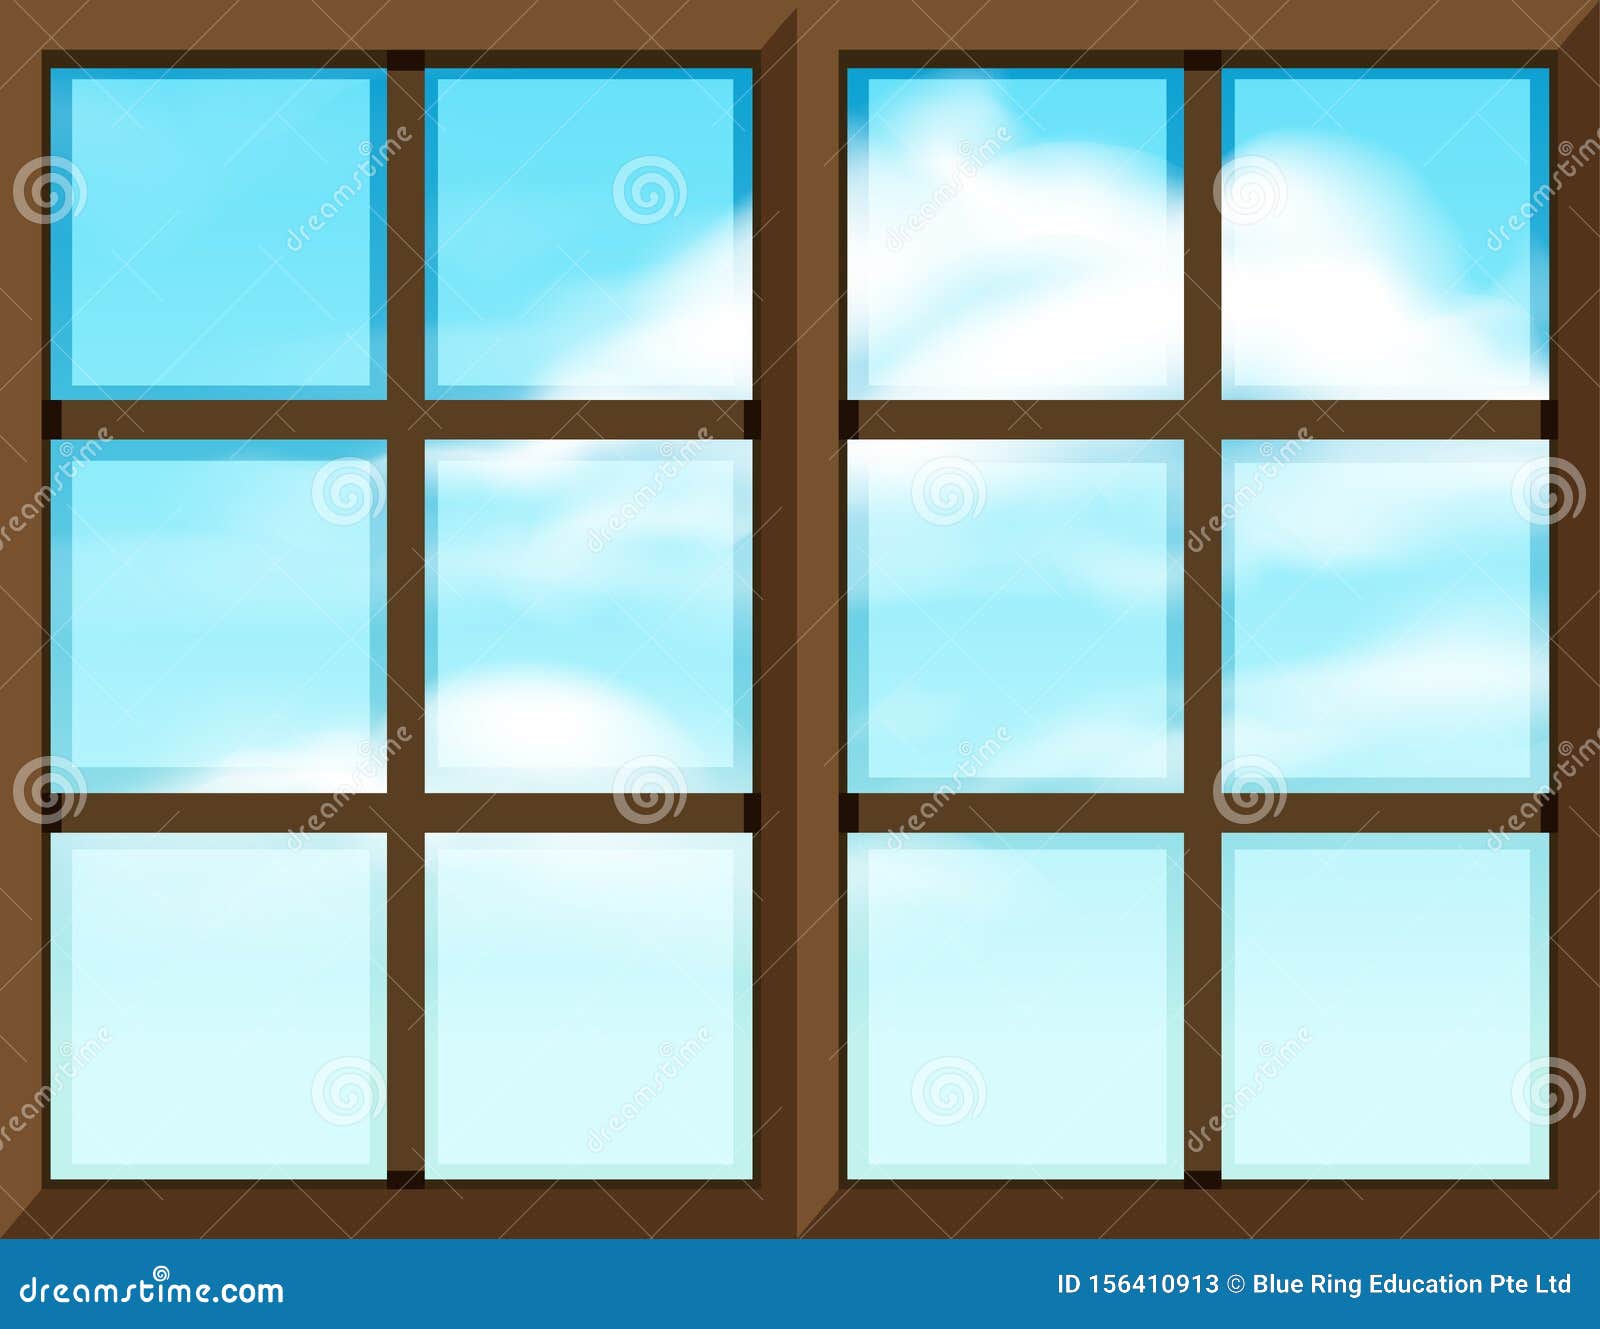 В оконной раме голубеет квадратик чистого неба. Прозрачная оконная рама. Макет окна. Шаблон окна для домика. Шаблоны на окна.